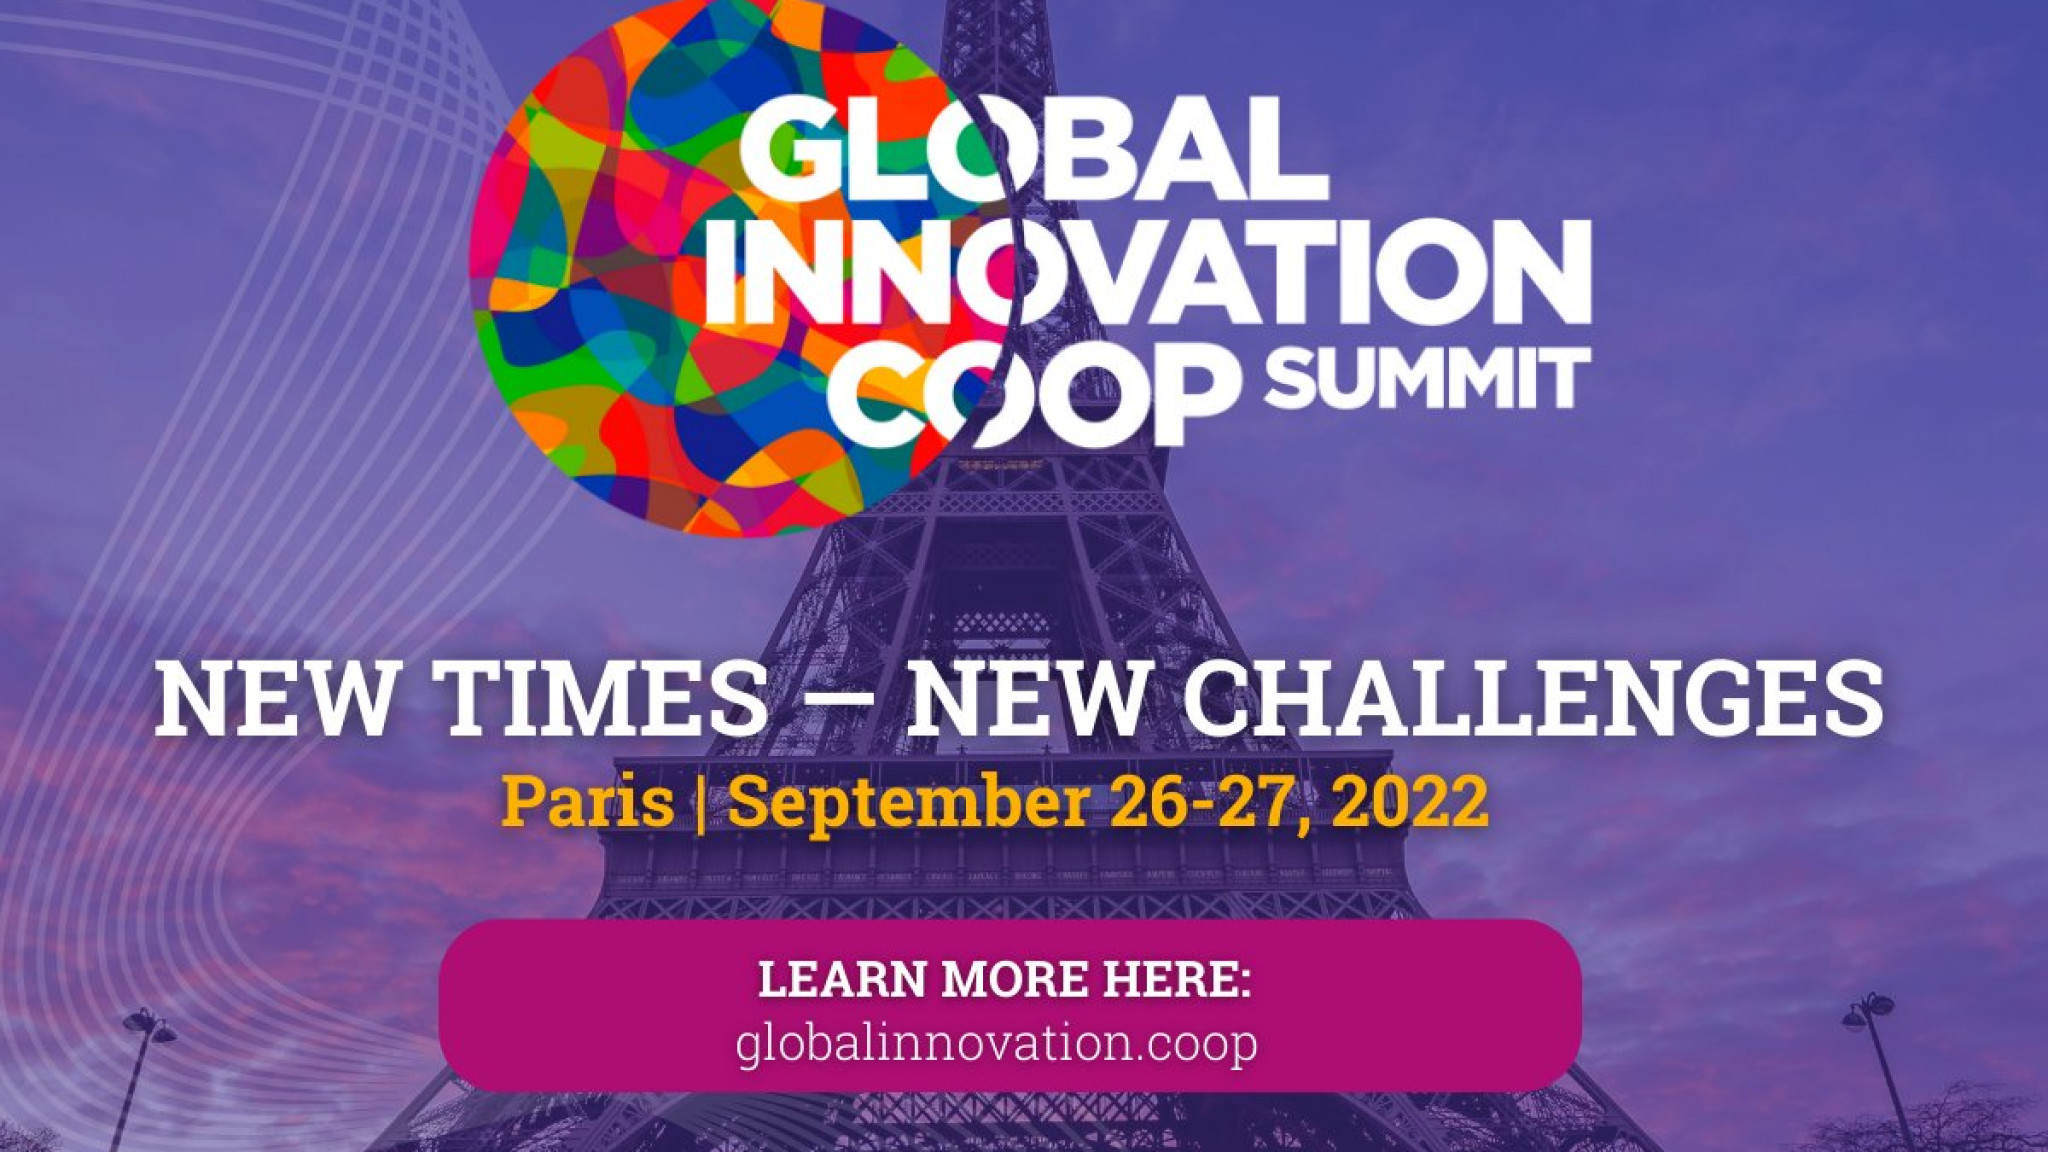 Le Global Innovation Coop Summit aura lieu les 26 et 27 septembre à Paris